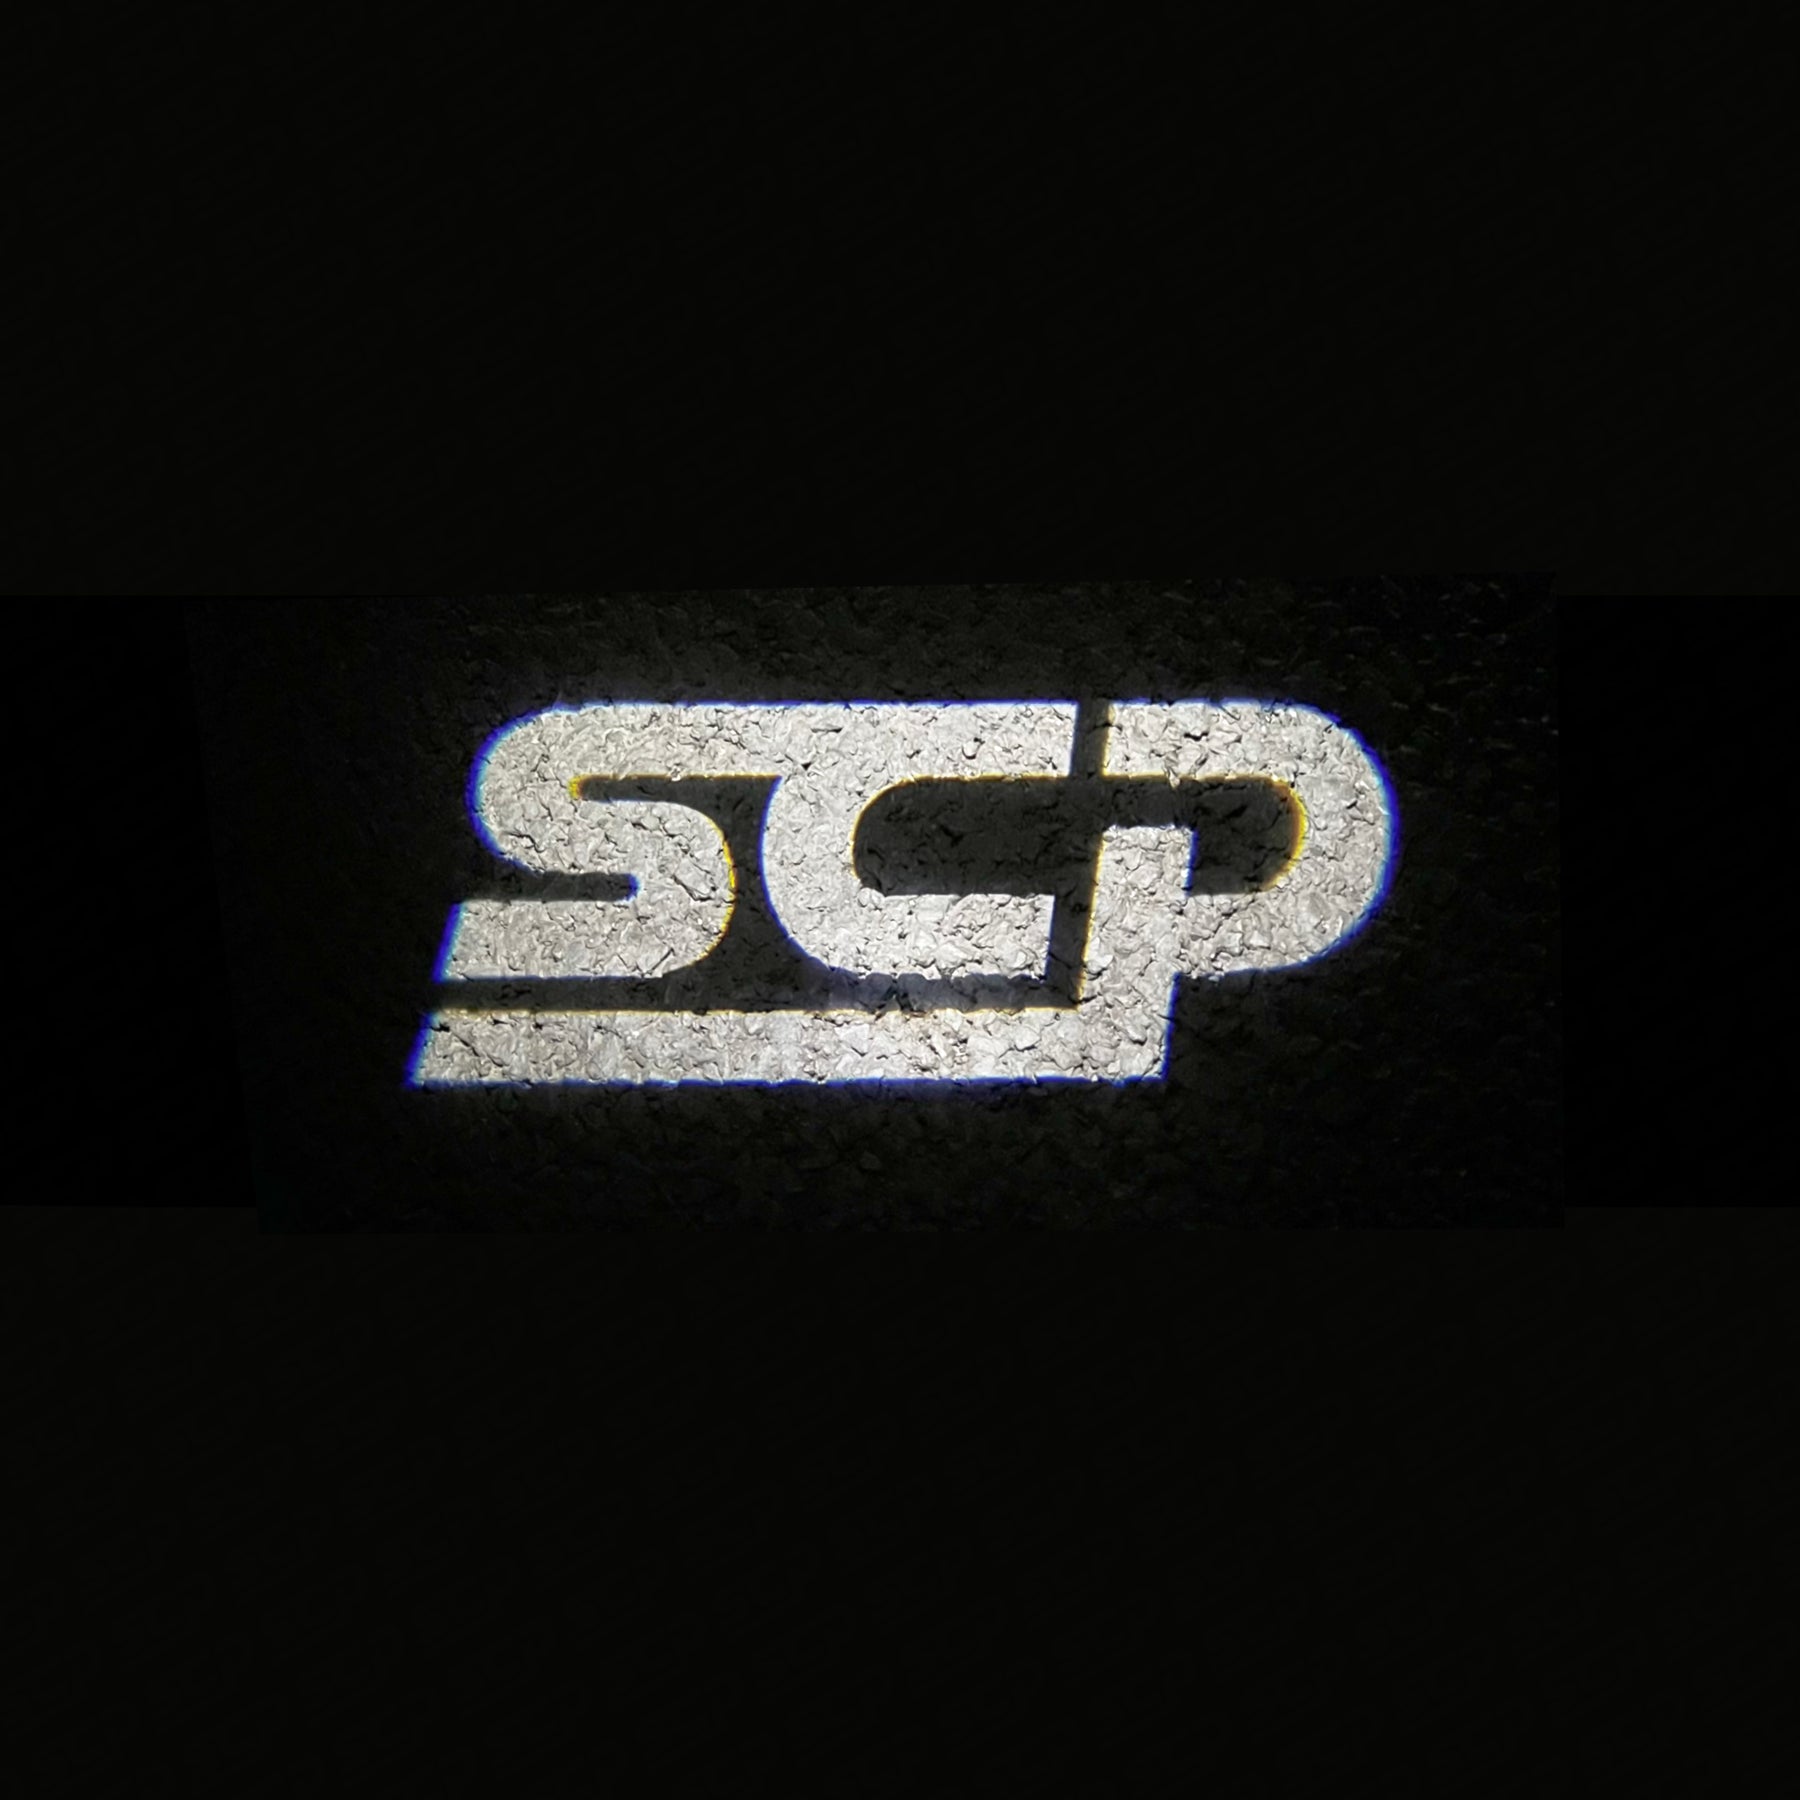 LED Door Projector (Pair) - SCP Logo